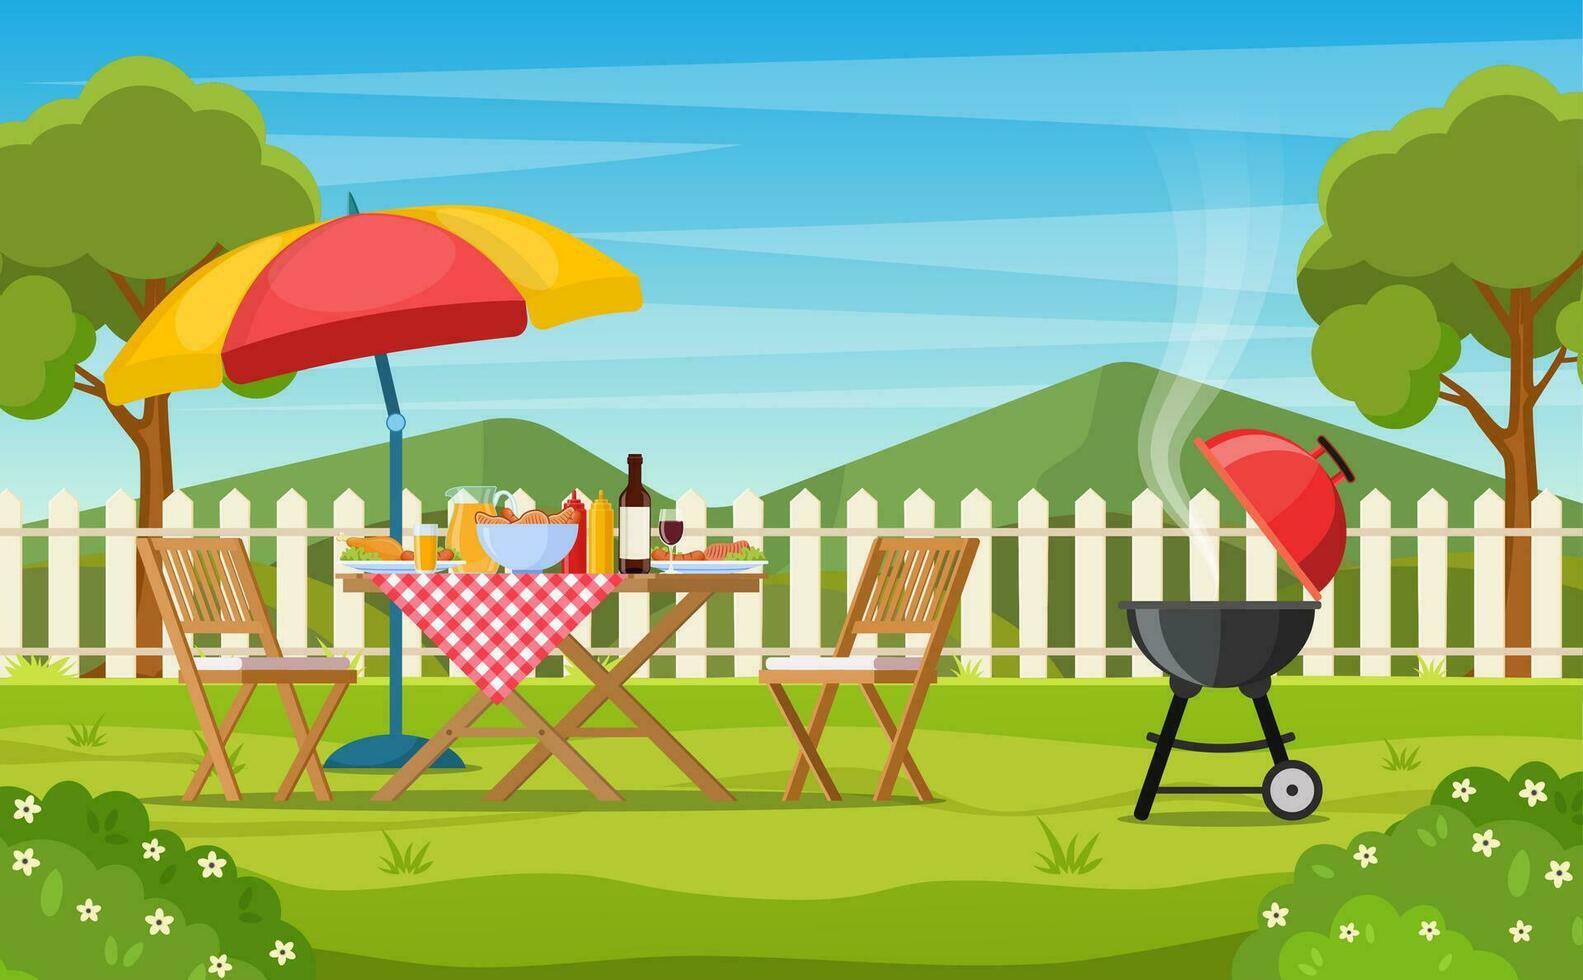 bbq fest i de bakgård med staket, träd, buskar. picknick med utegrill på sommar gräsmatta i parkera eller trädgård mat på tabell, stolar och paraply. vektor illustration i platt design